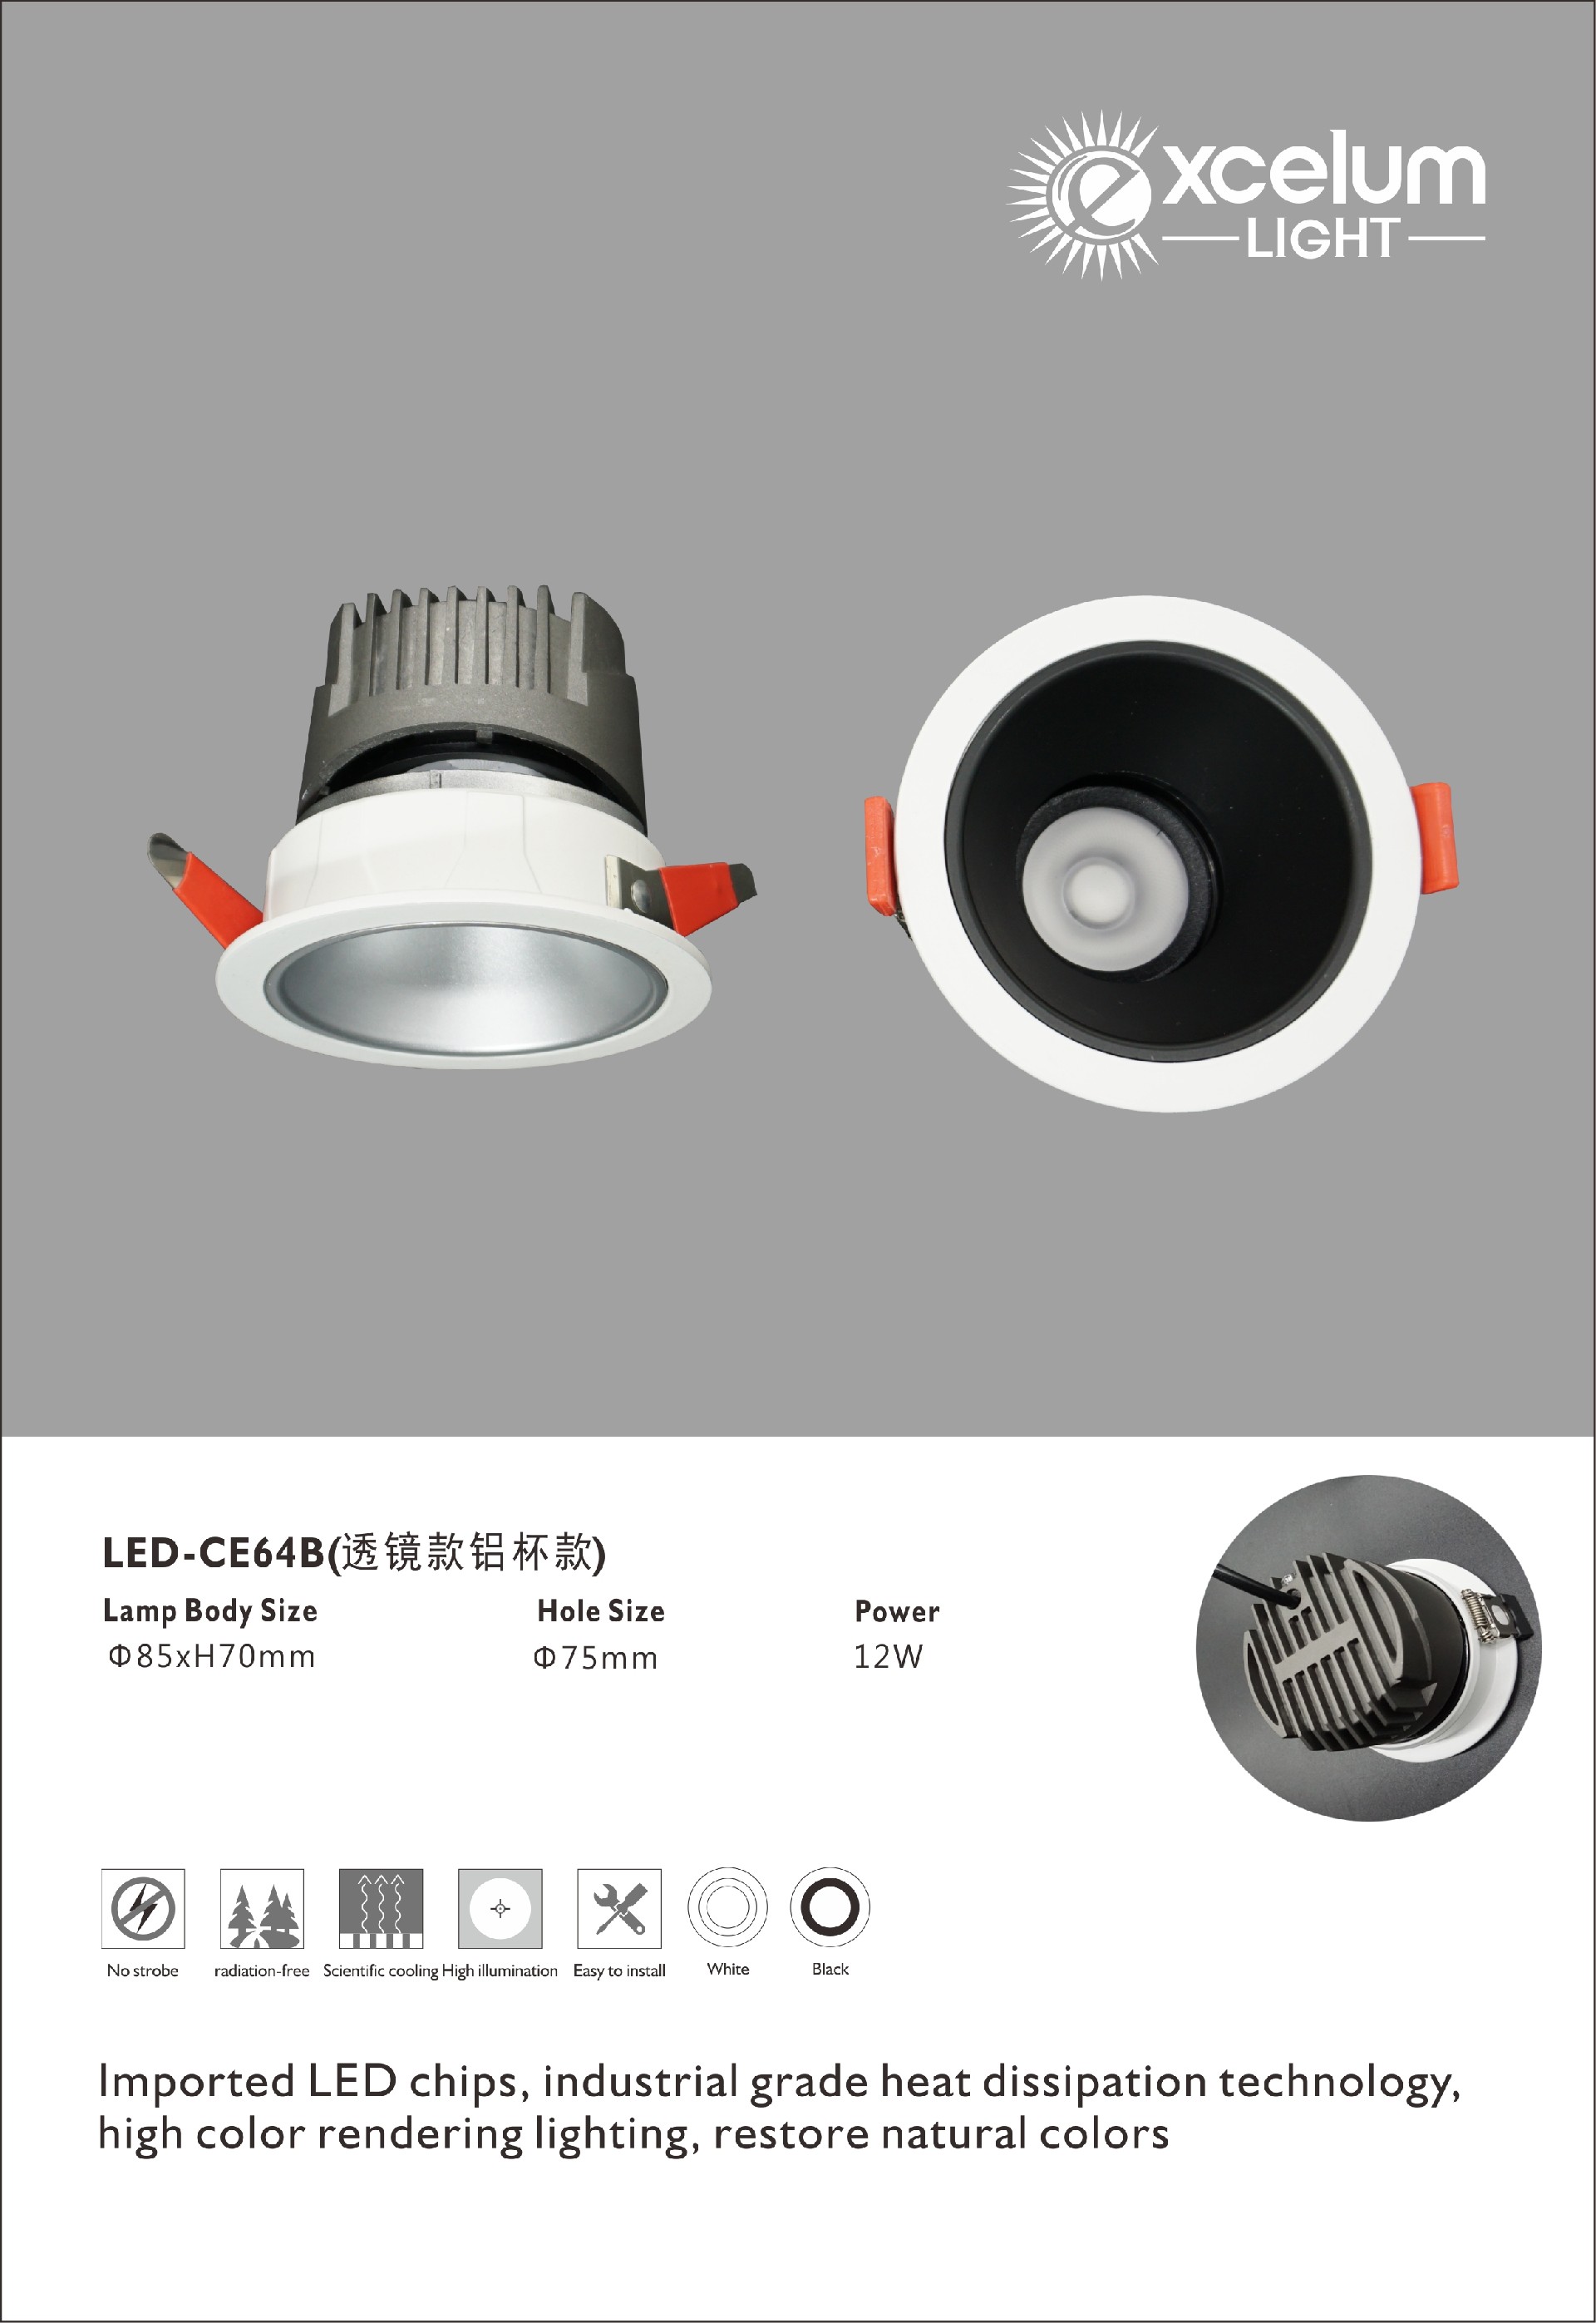 LED-CE64B.jpg